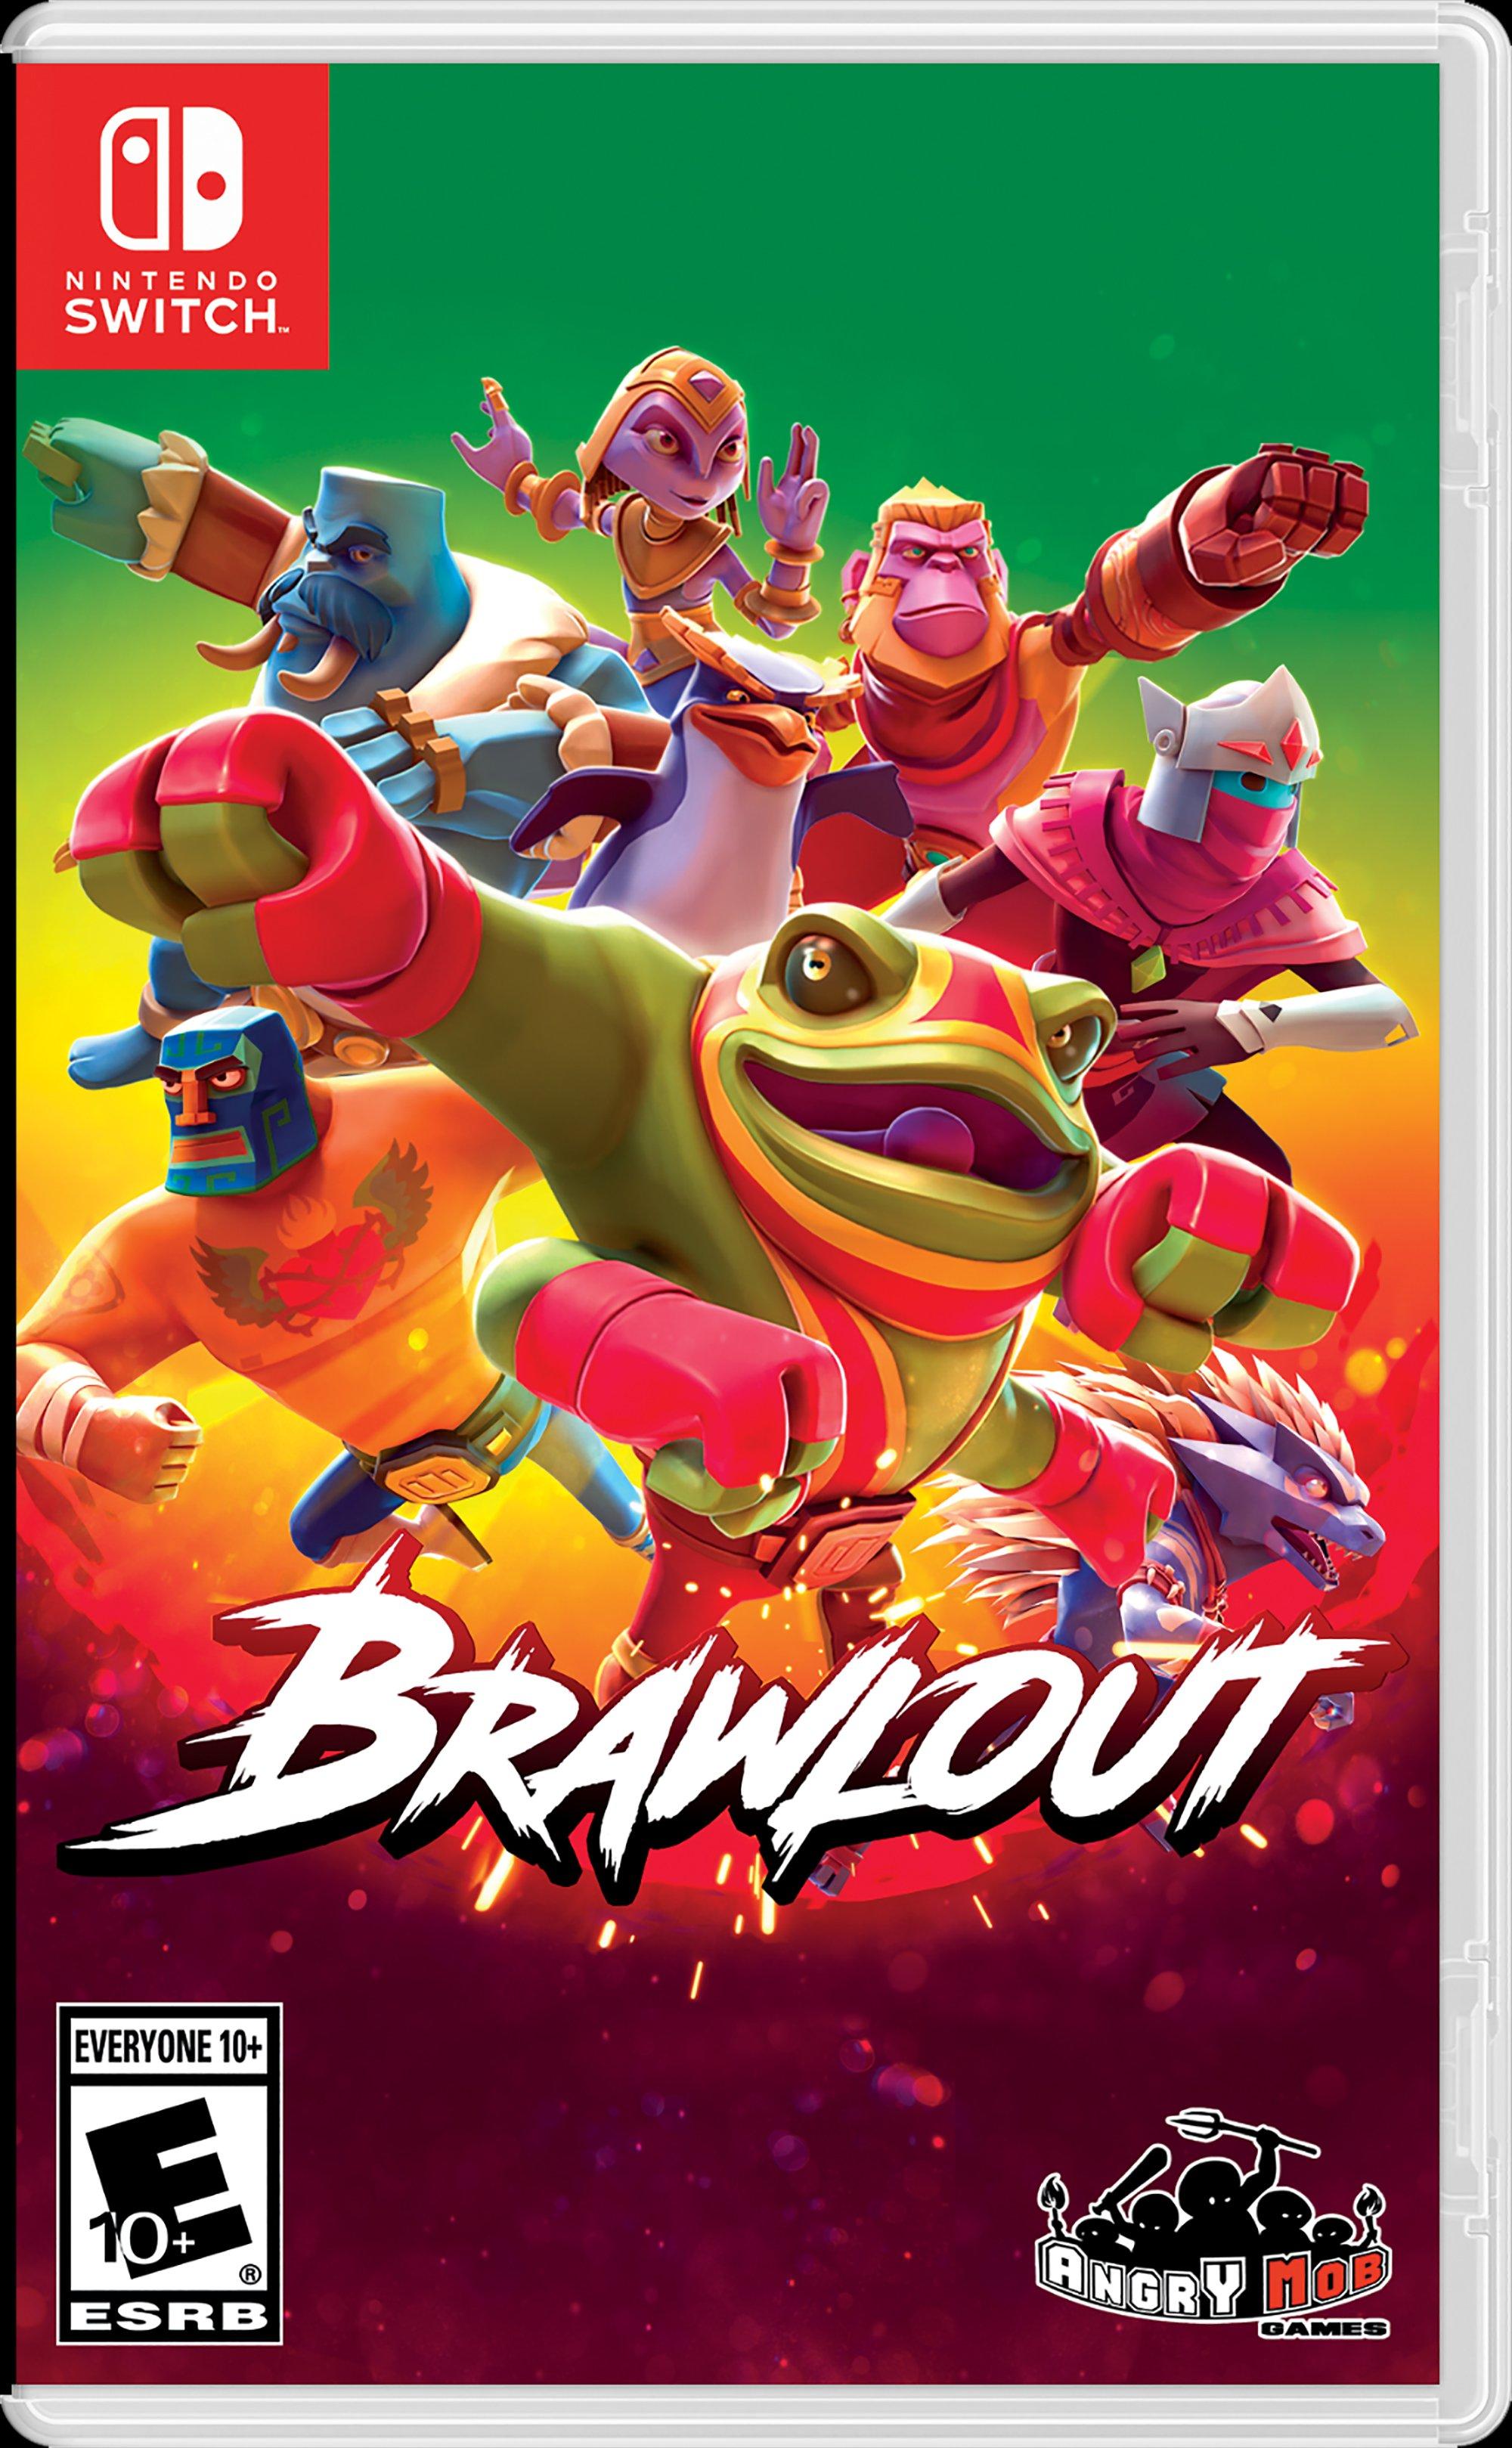 Brawlout - Nintendo Switch